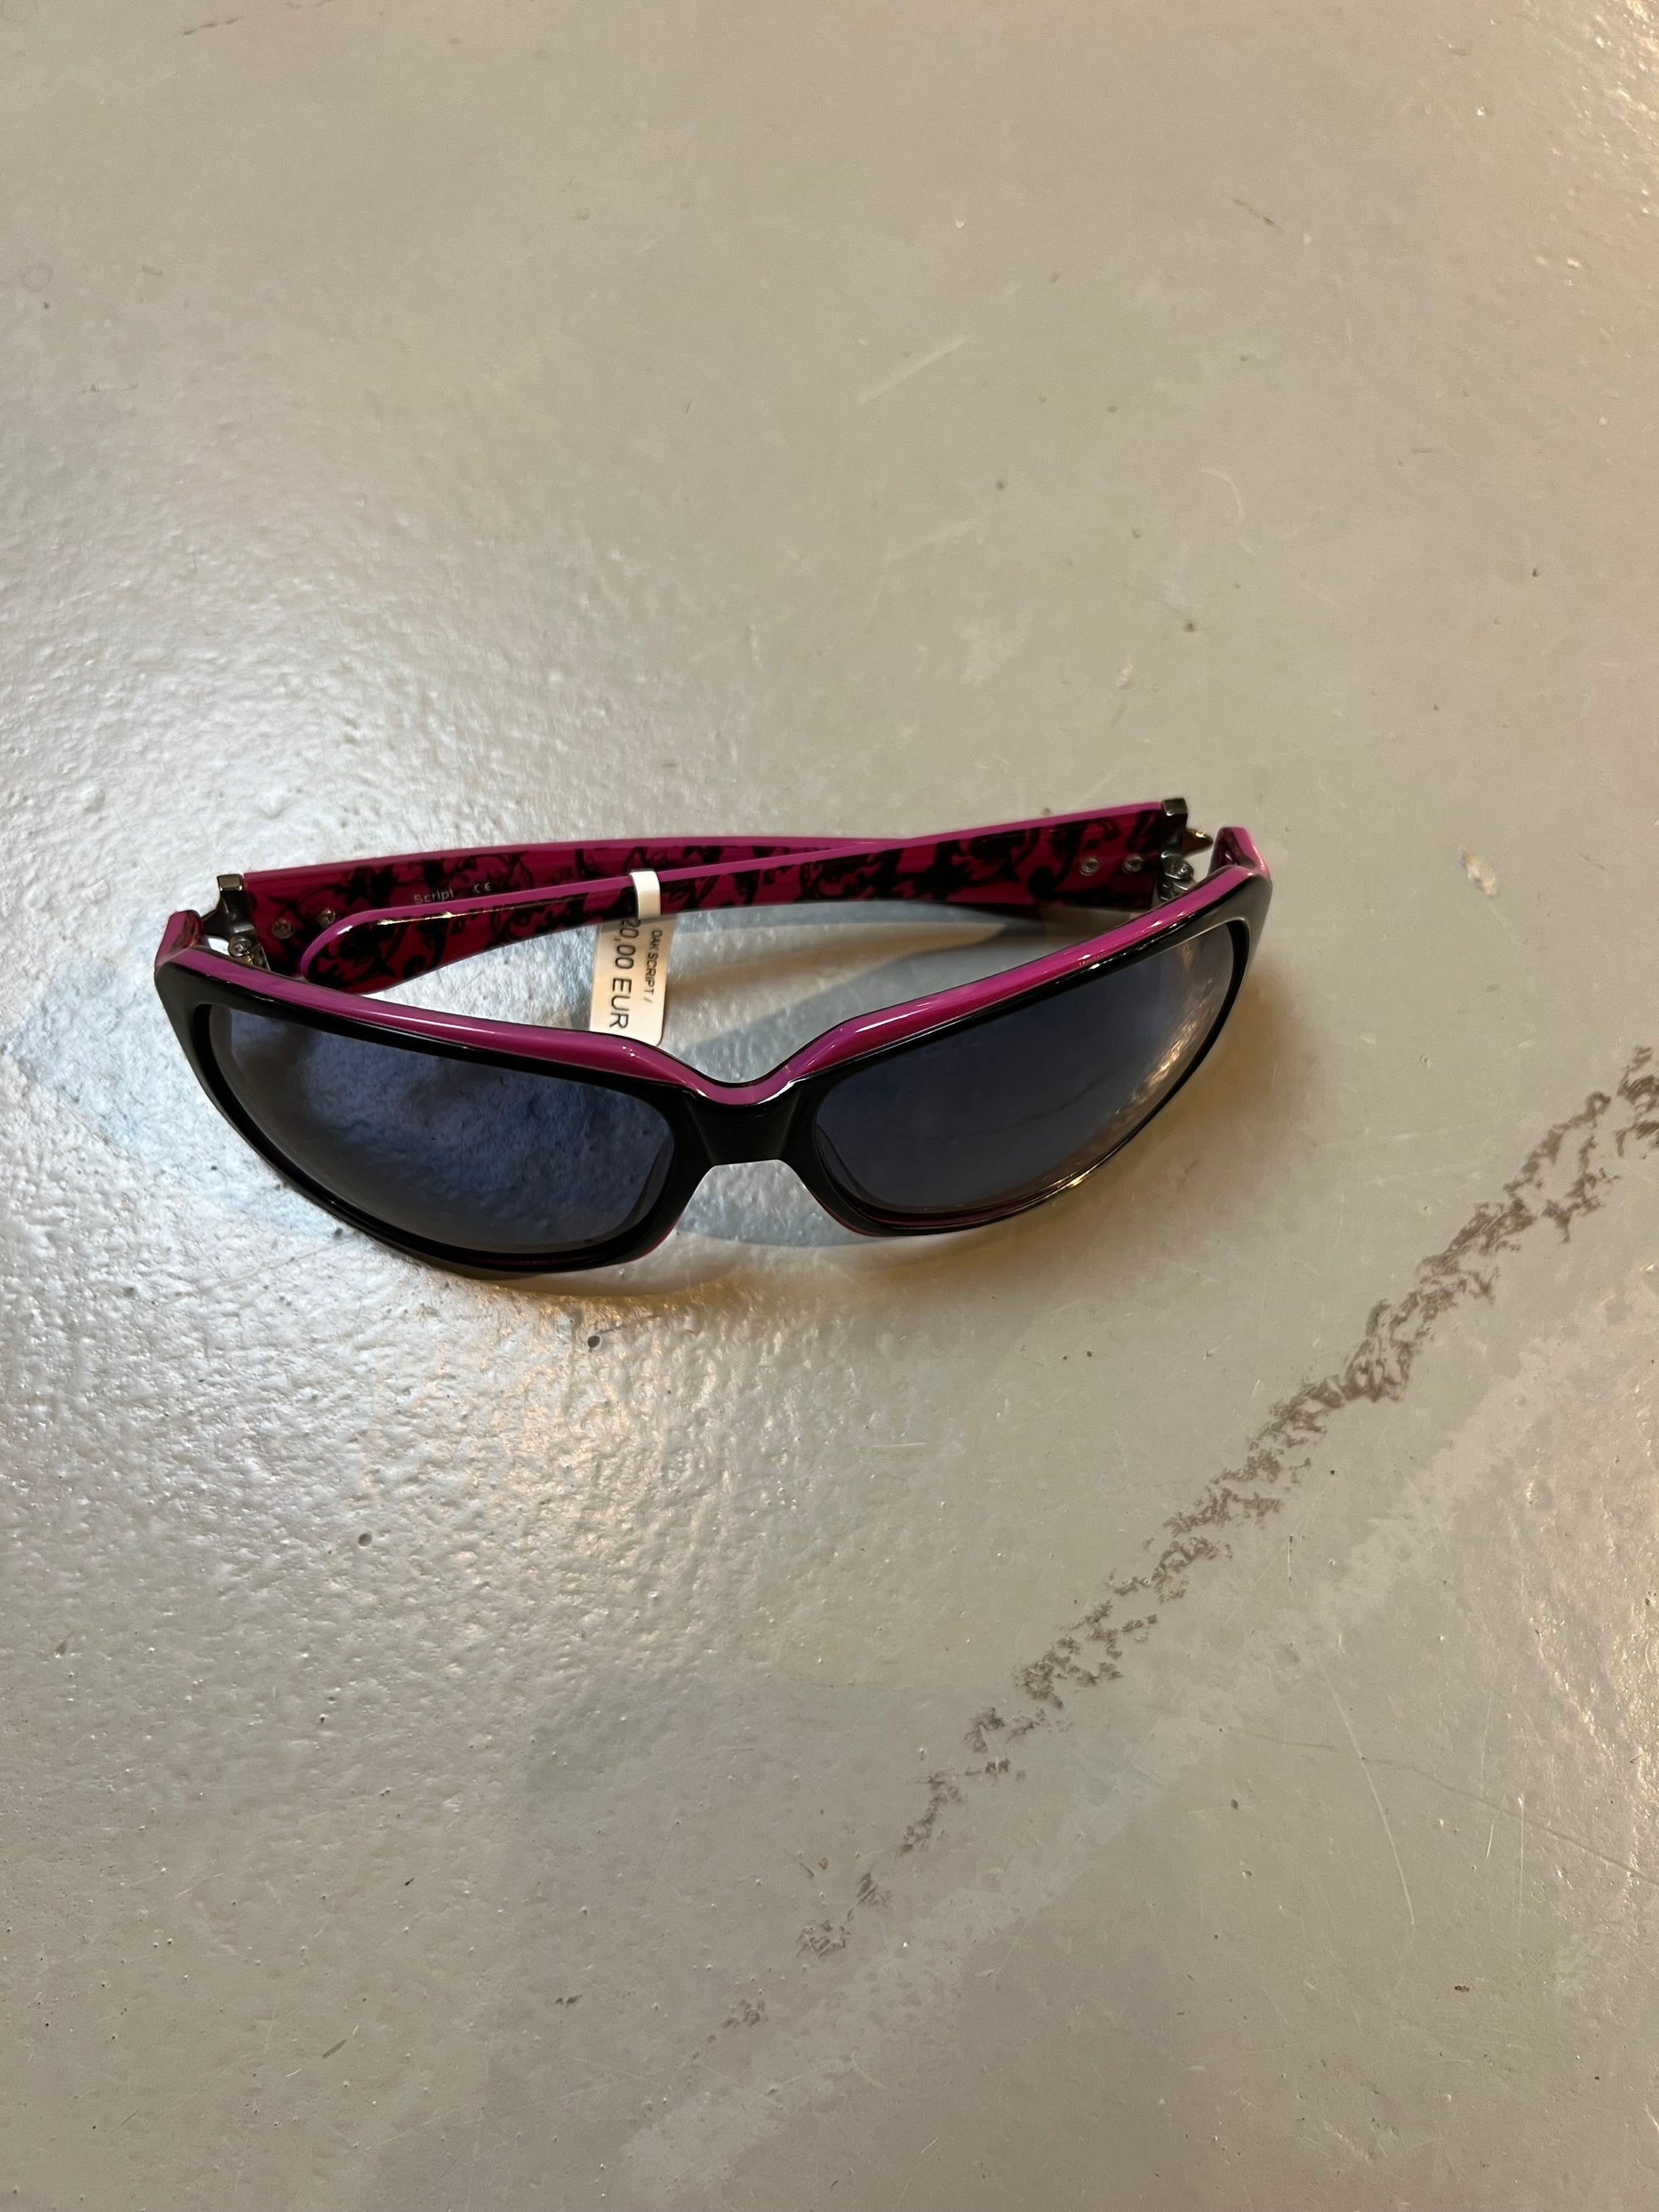 Produkt bild der Oakley Sunglasses Black Pink von oben